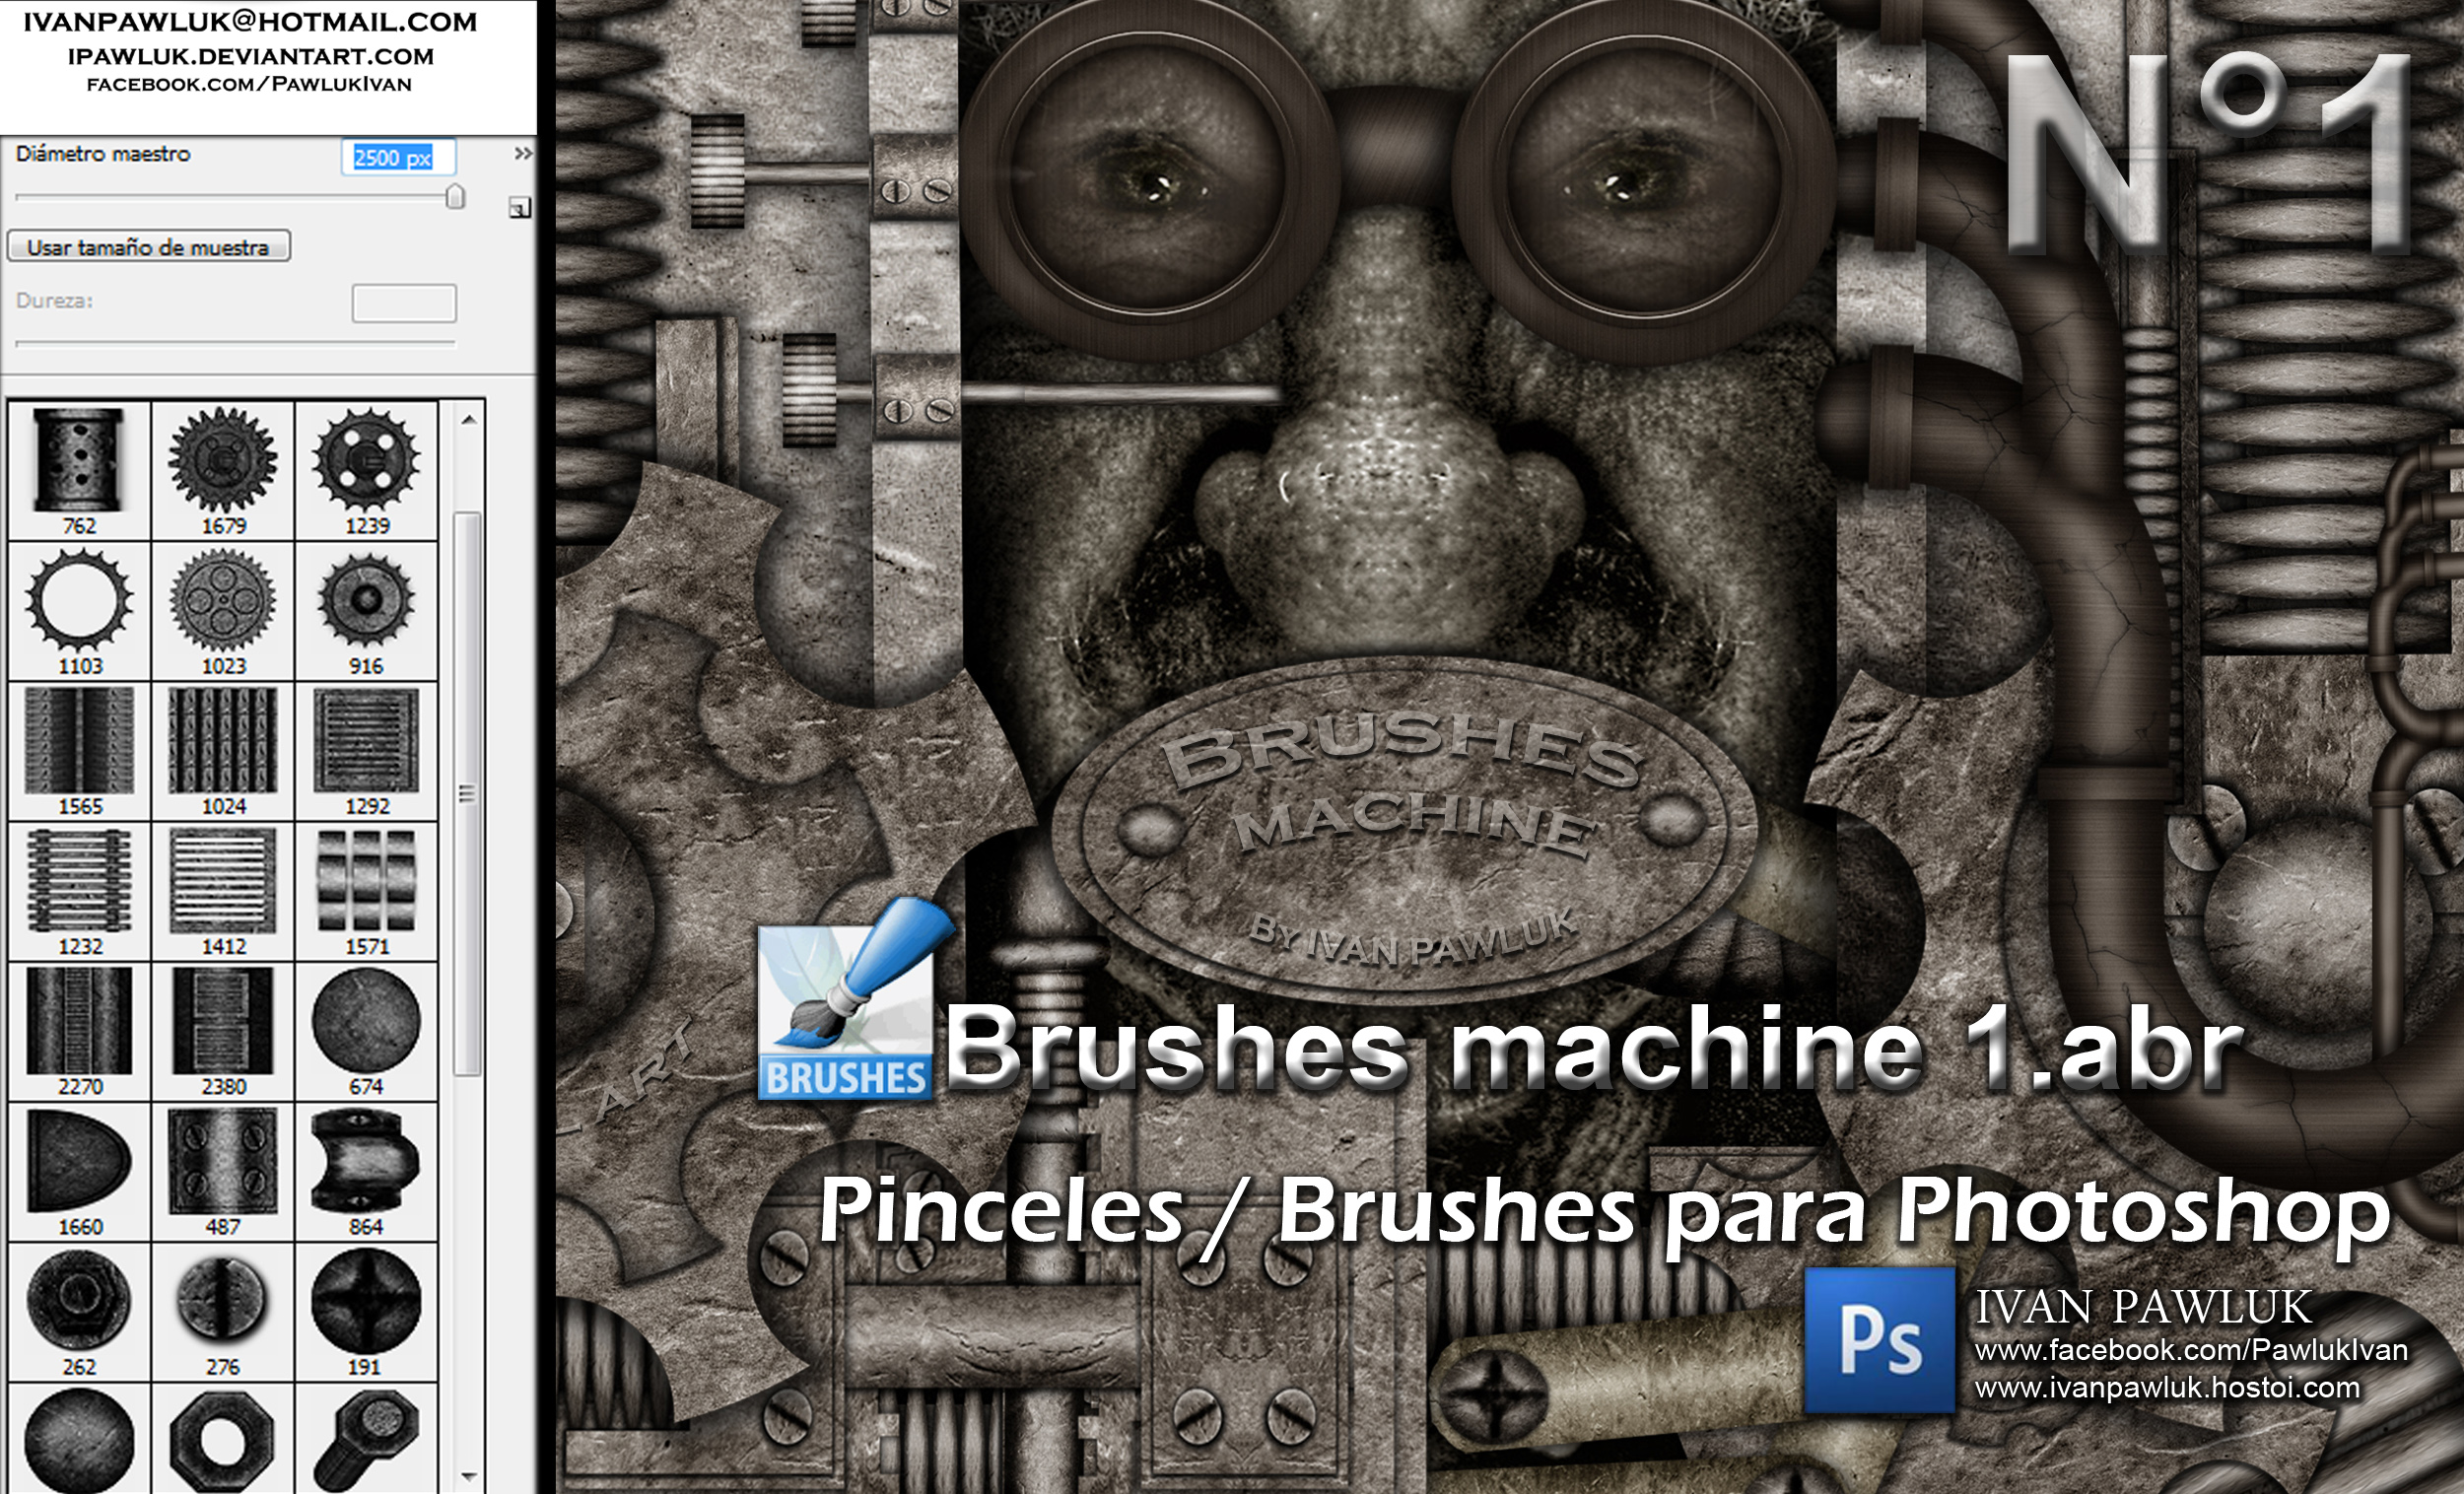 Brushes machine 1 - PAWLUK